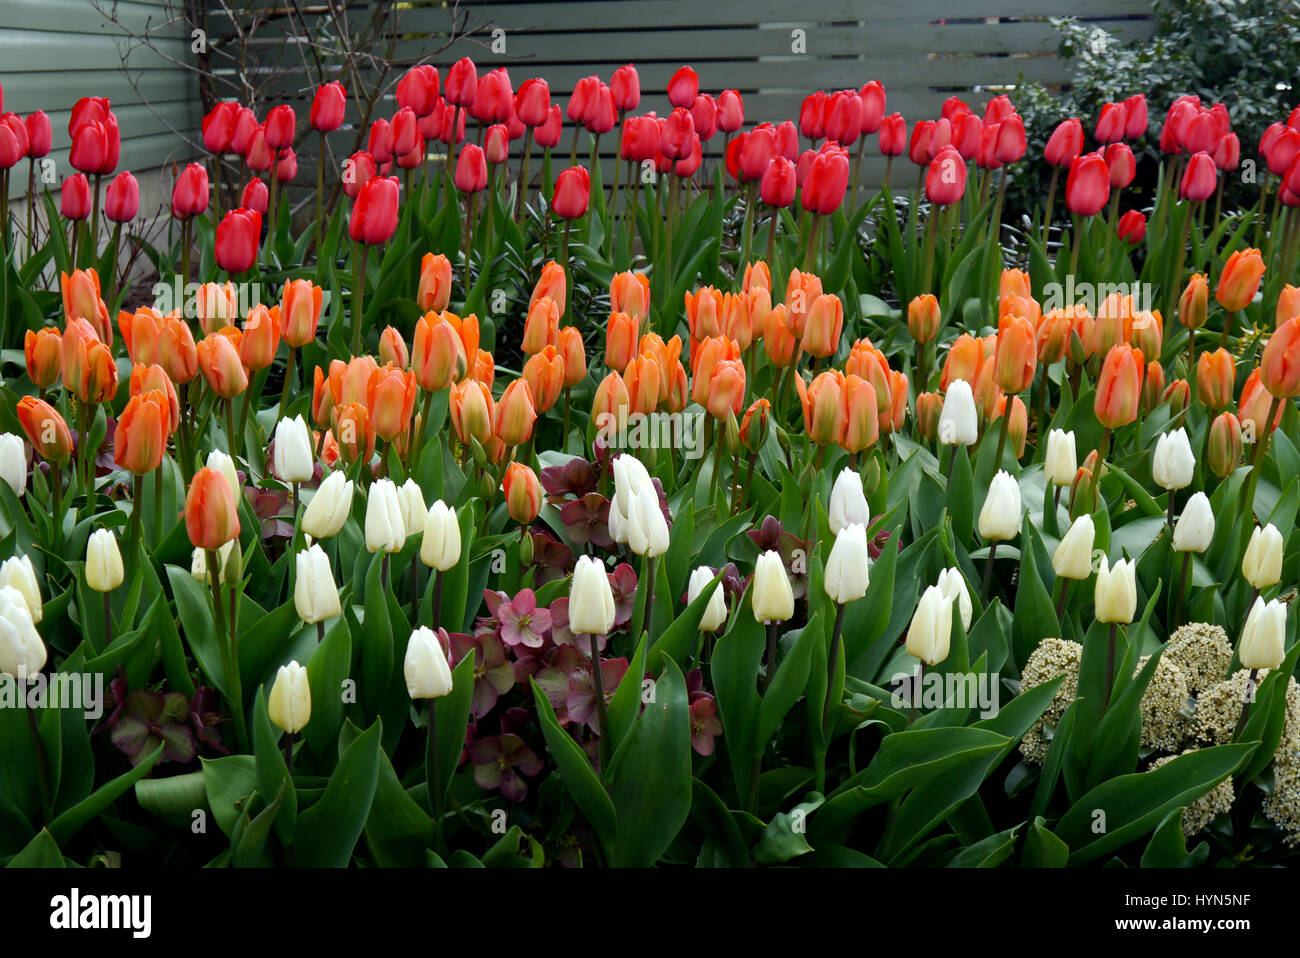 Reihen von bunten Tulpen im Garten RHS Harlow Carr, Harrogate, Yorkshire. Stockfoto